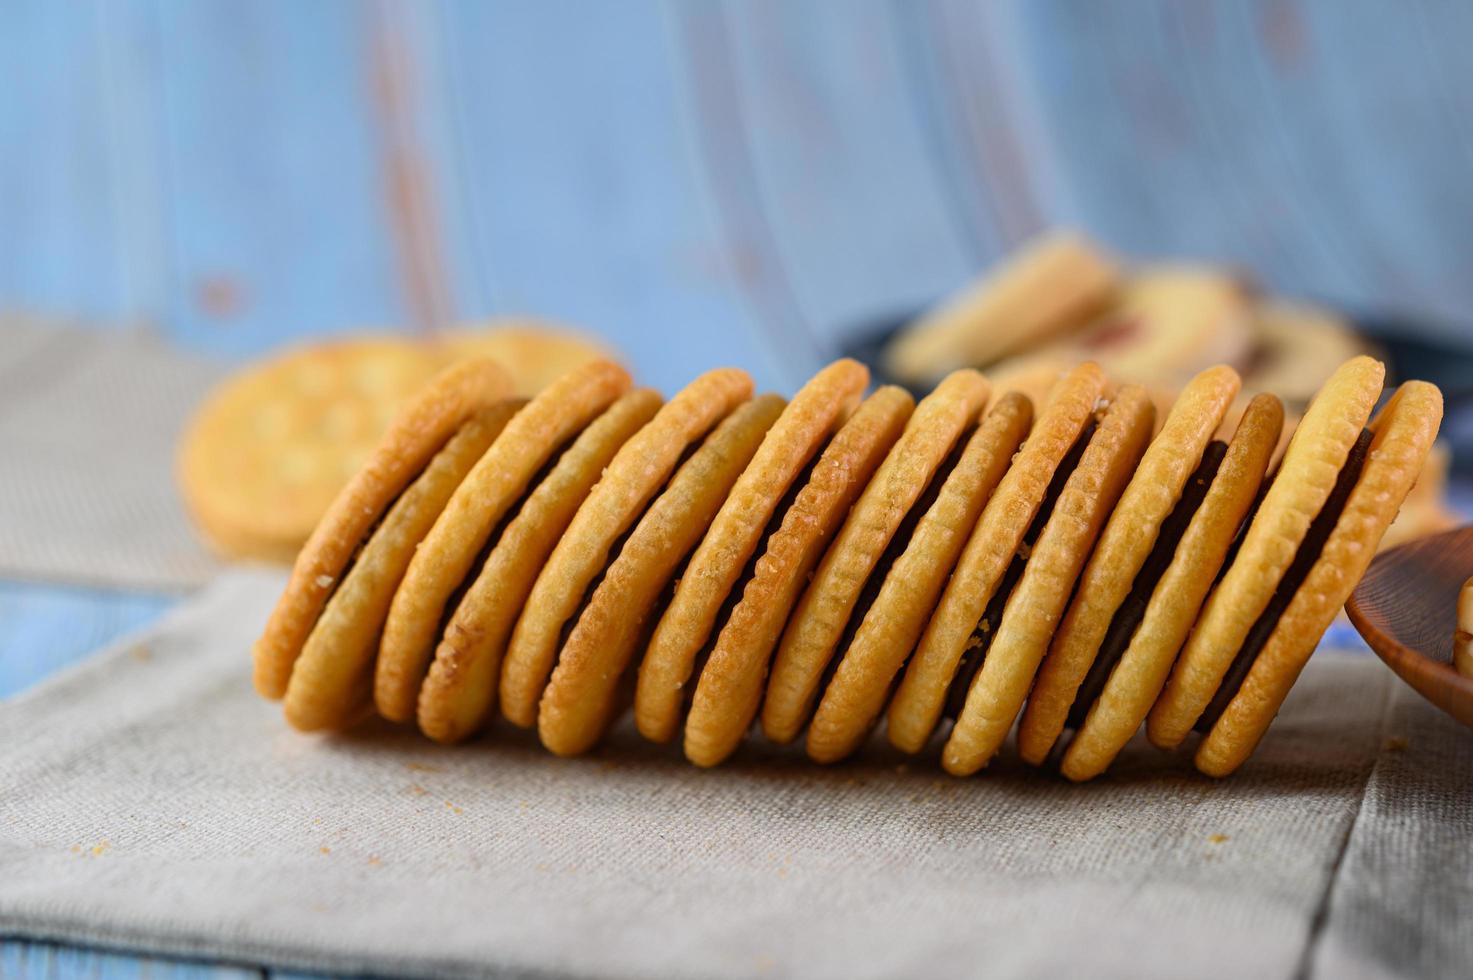 biscoitos dispostos em um pano foto